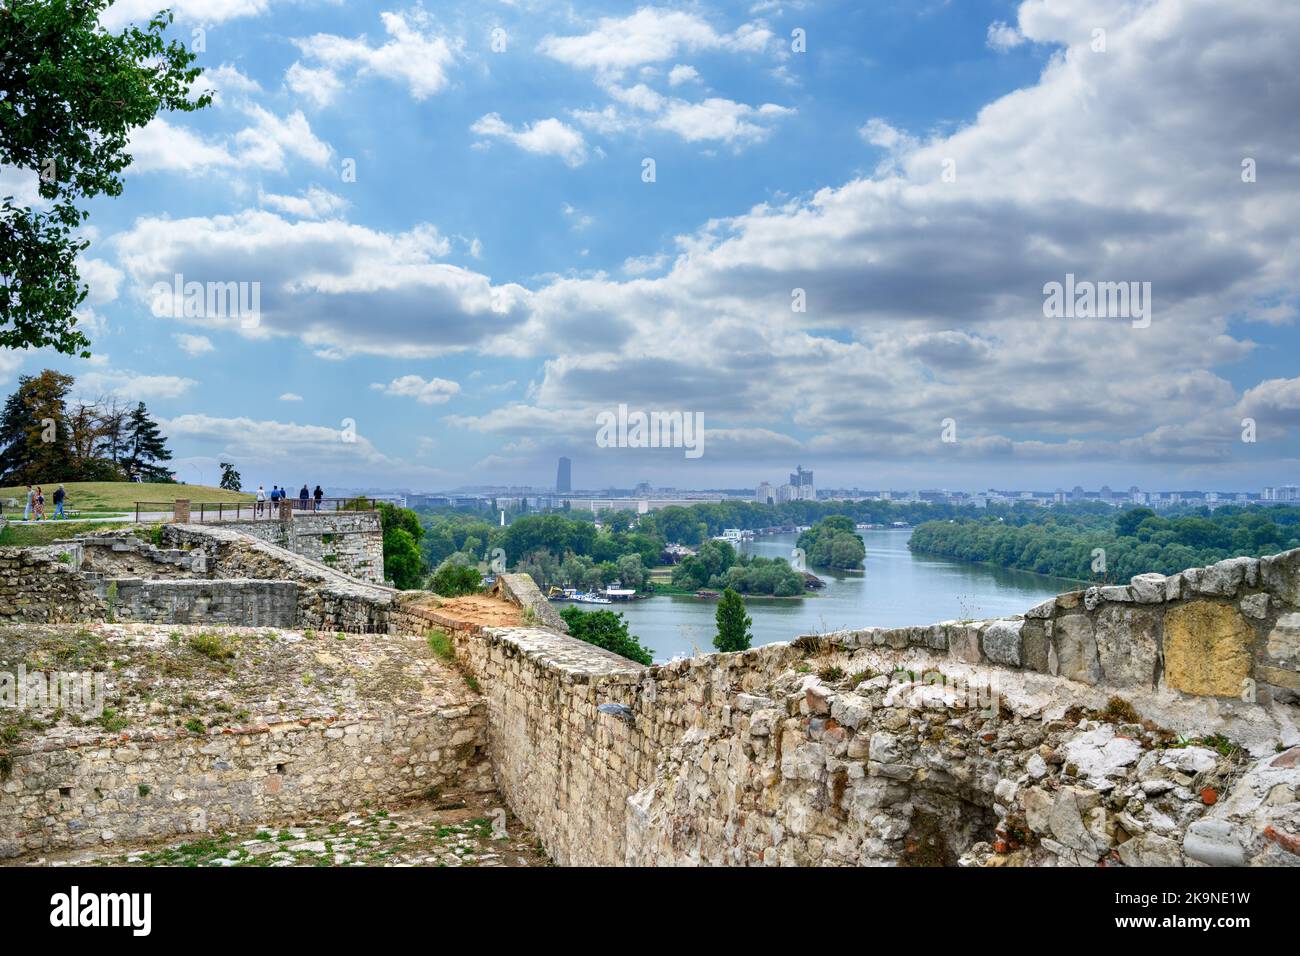 Blick auf den Zusammenfluss der Save und der Donau von den Mauern der Festung Belgrad, Belgrad, Serbien Stockfoto